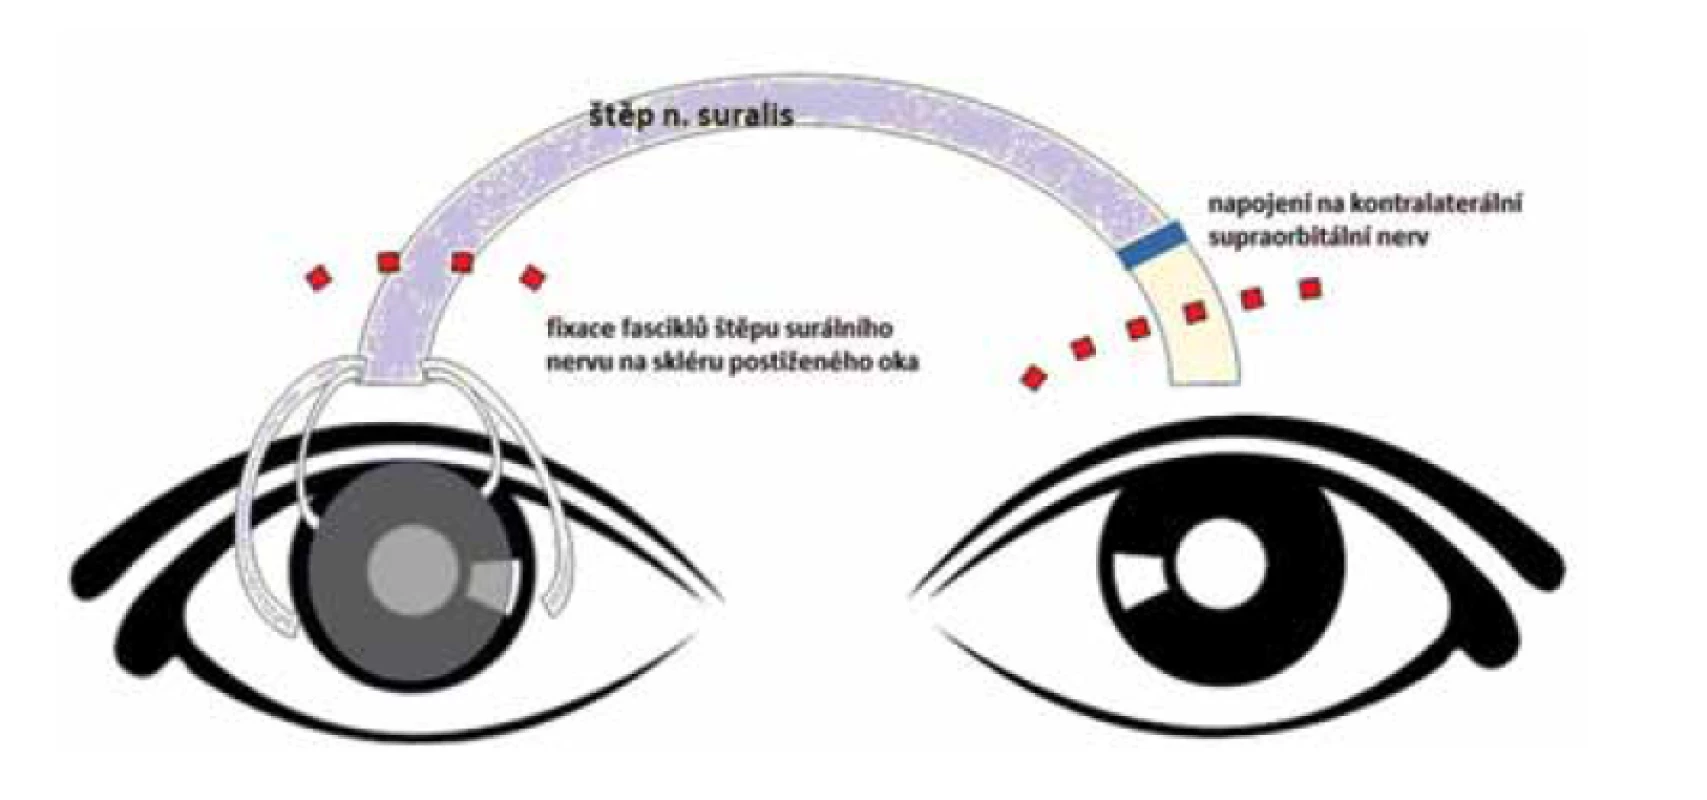 Schéma nepřímé neurotizace rohovky postiženého pravého oka za využití
nervového štěpu a kontralaterálního supraorbitálního nervu